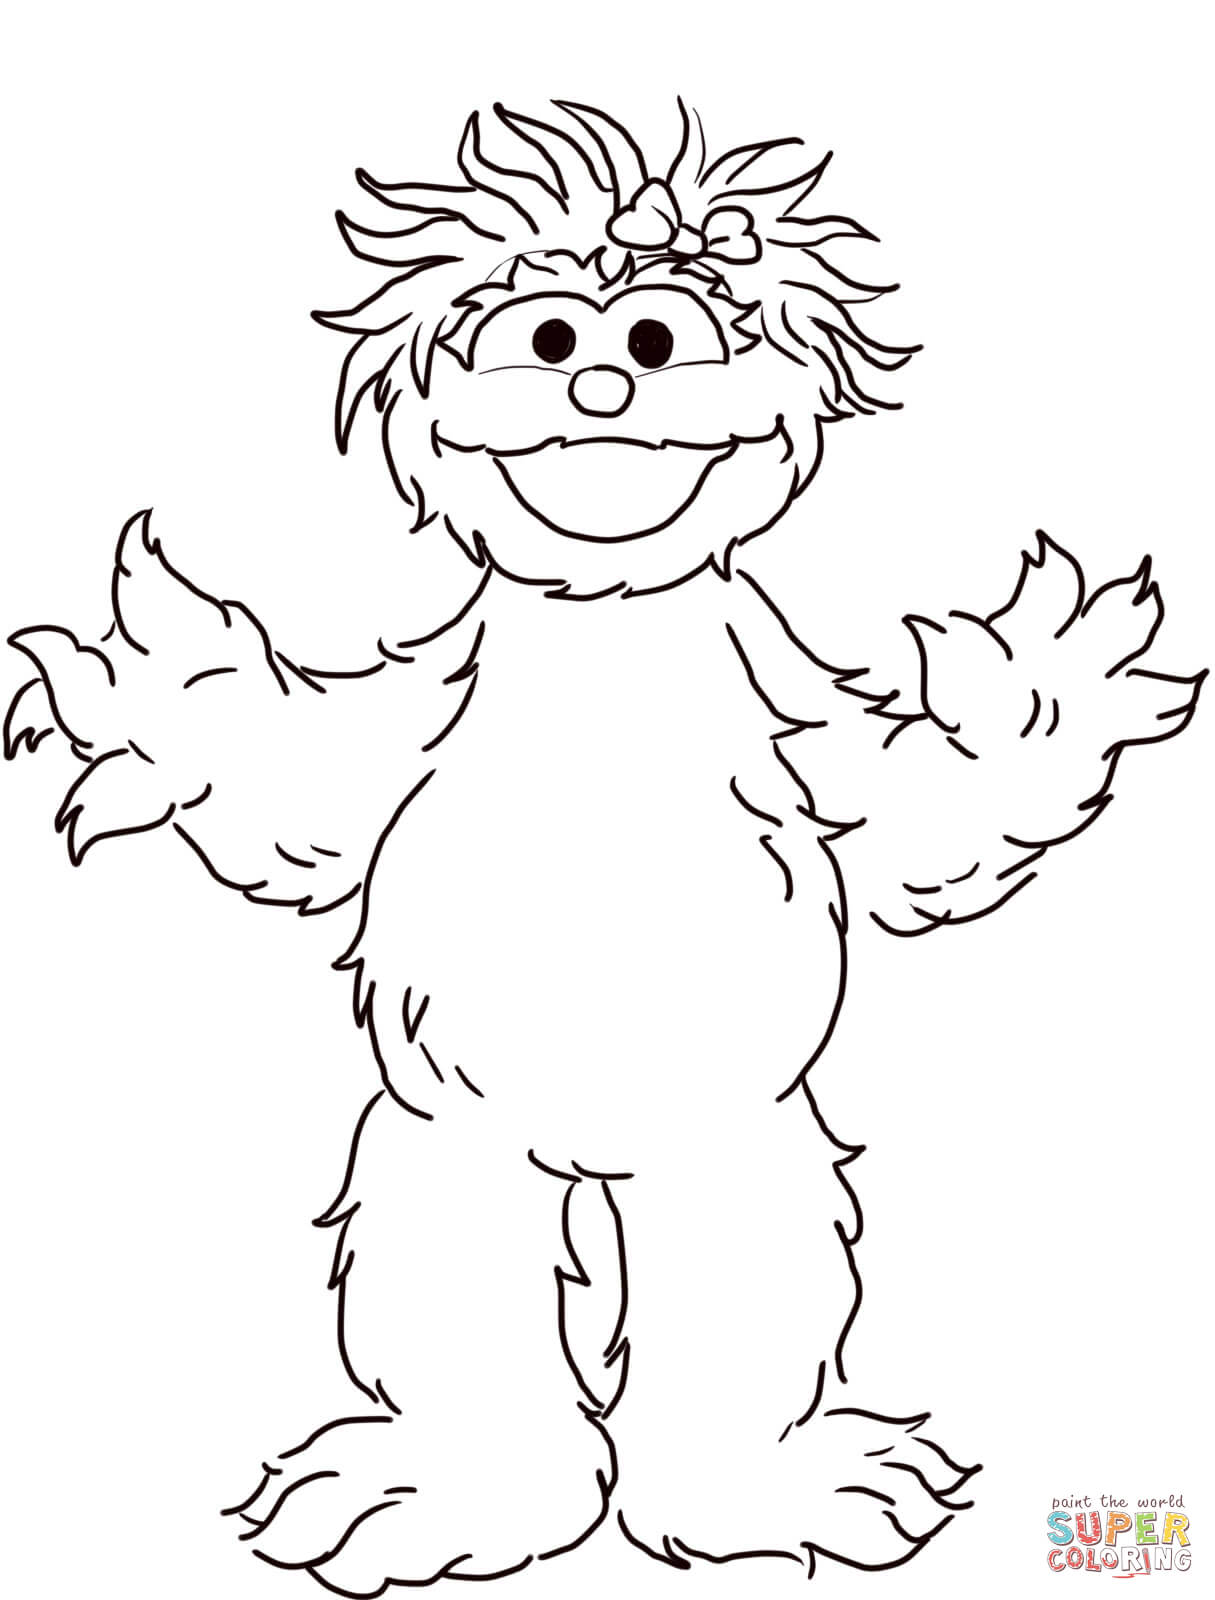 Snuffleupagus Stuffed Animal coloring page | Free Printable ...